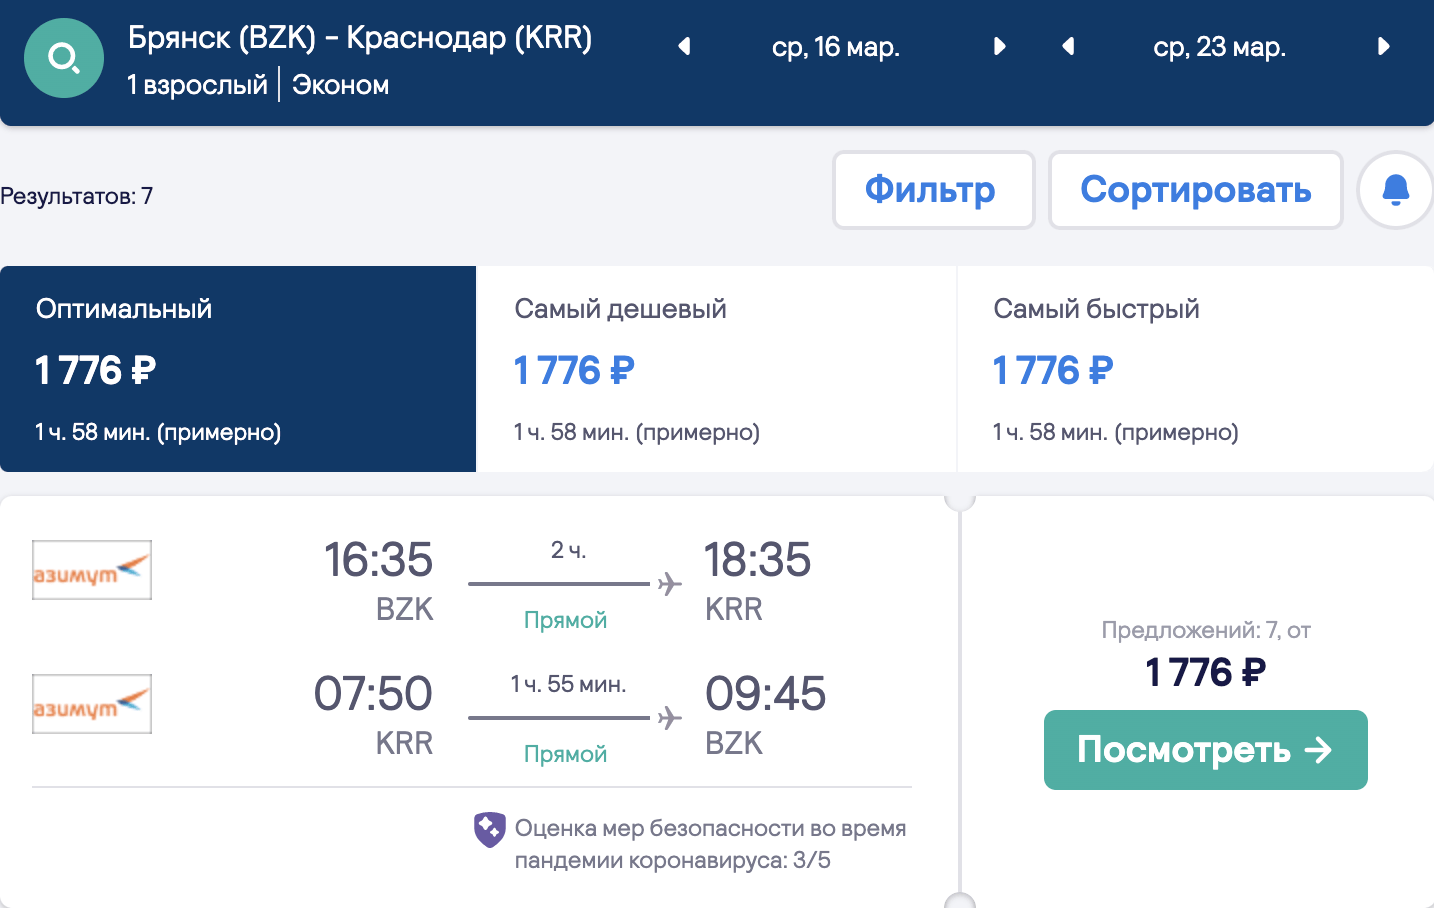 Malaking seleksyon ng mga murang byahe mula sa mga rehiyon patungo sa Krasnodar at Minvody mula sa 1800₽ round trip